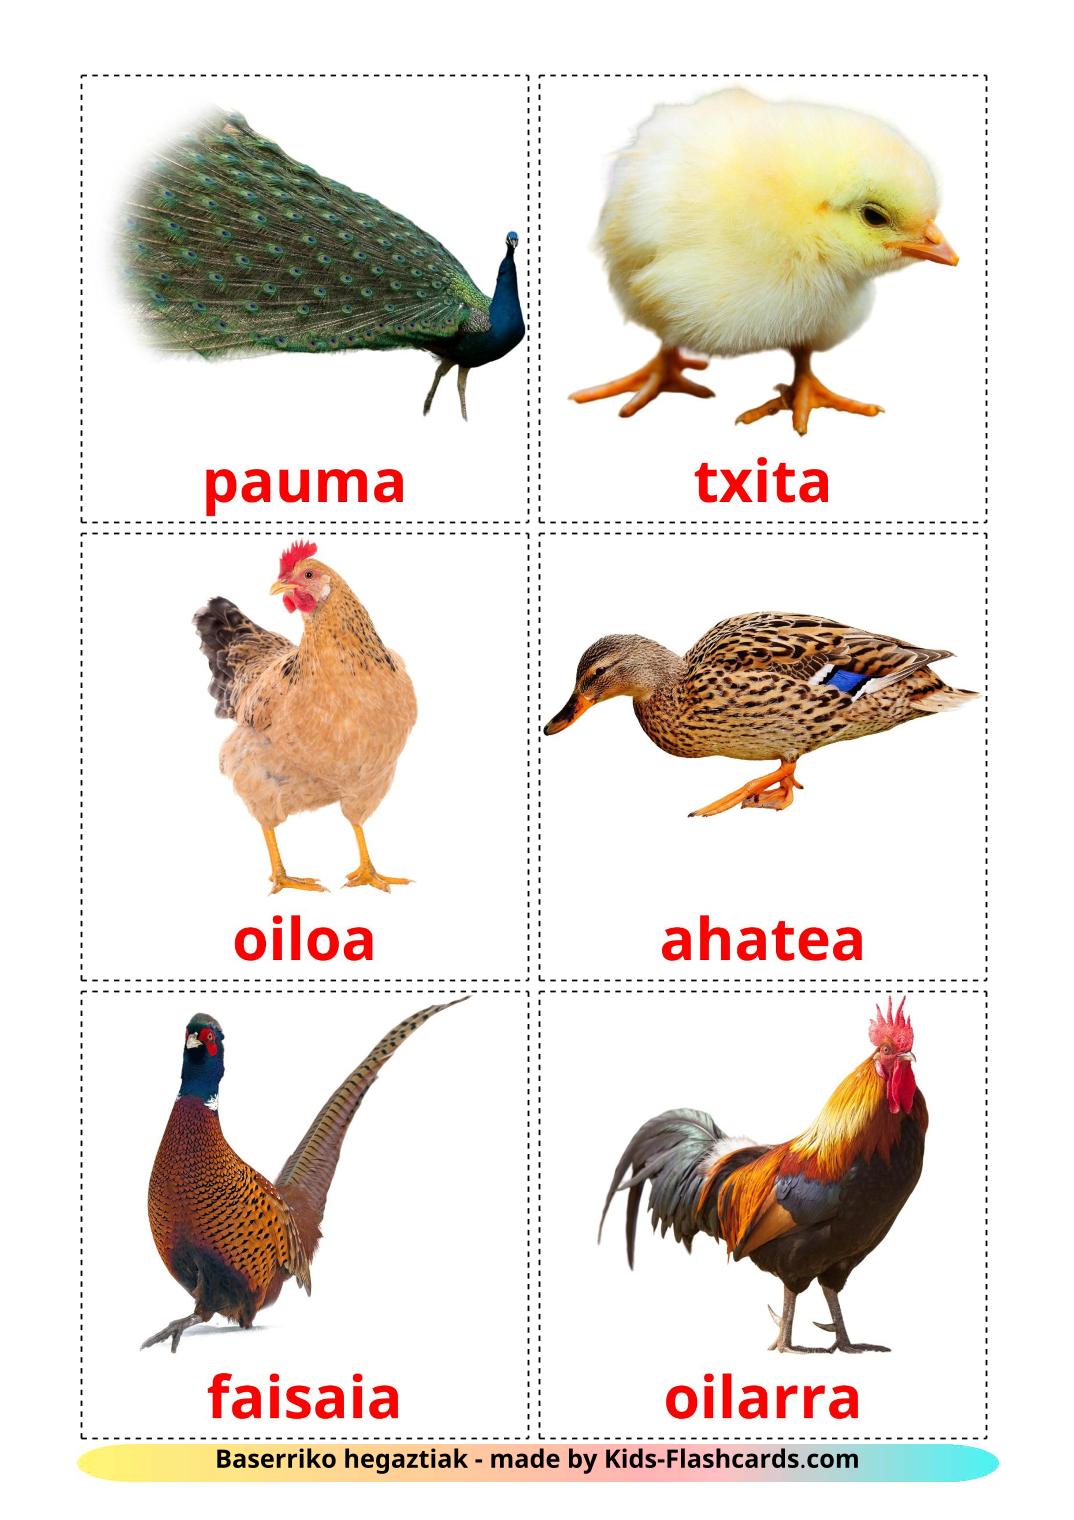 Les Oiseaux de Ferme - 11 Flashcards basque imprimables gratuitement